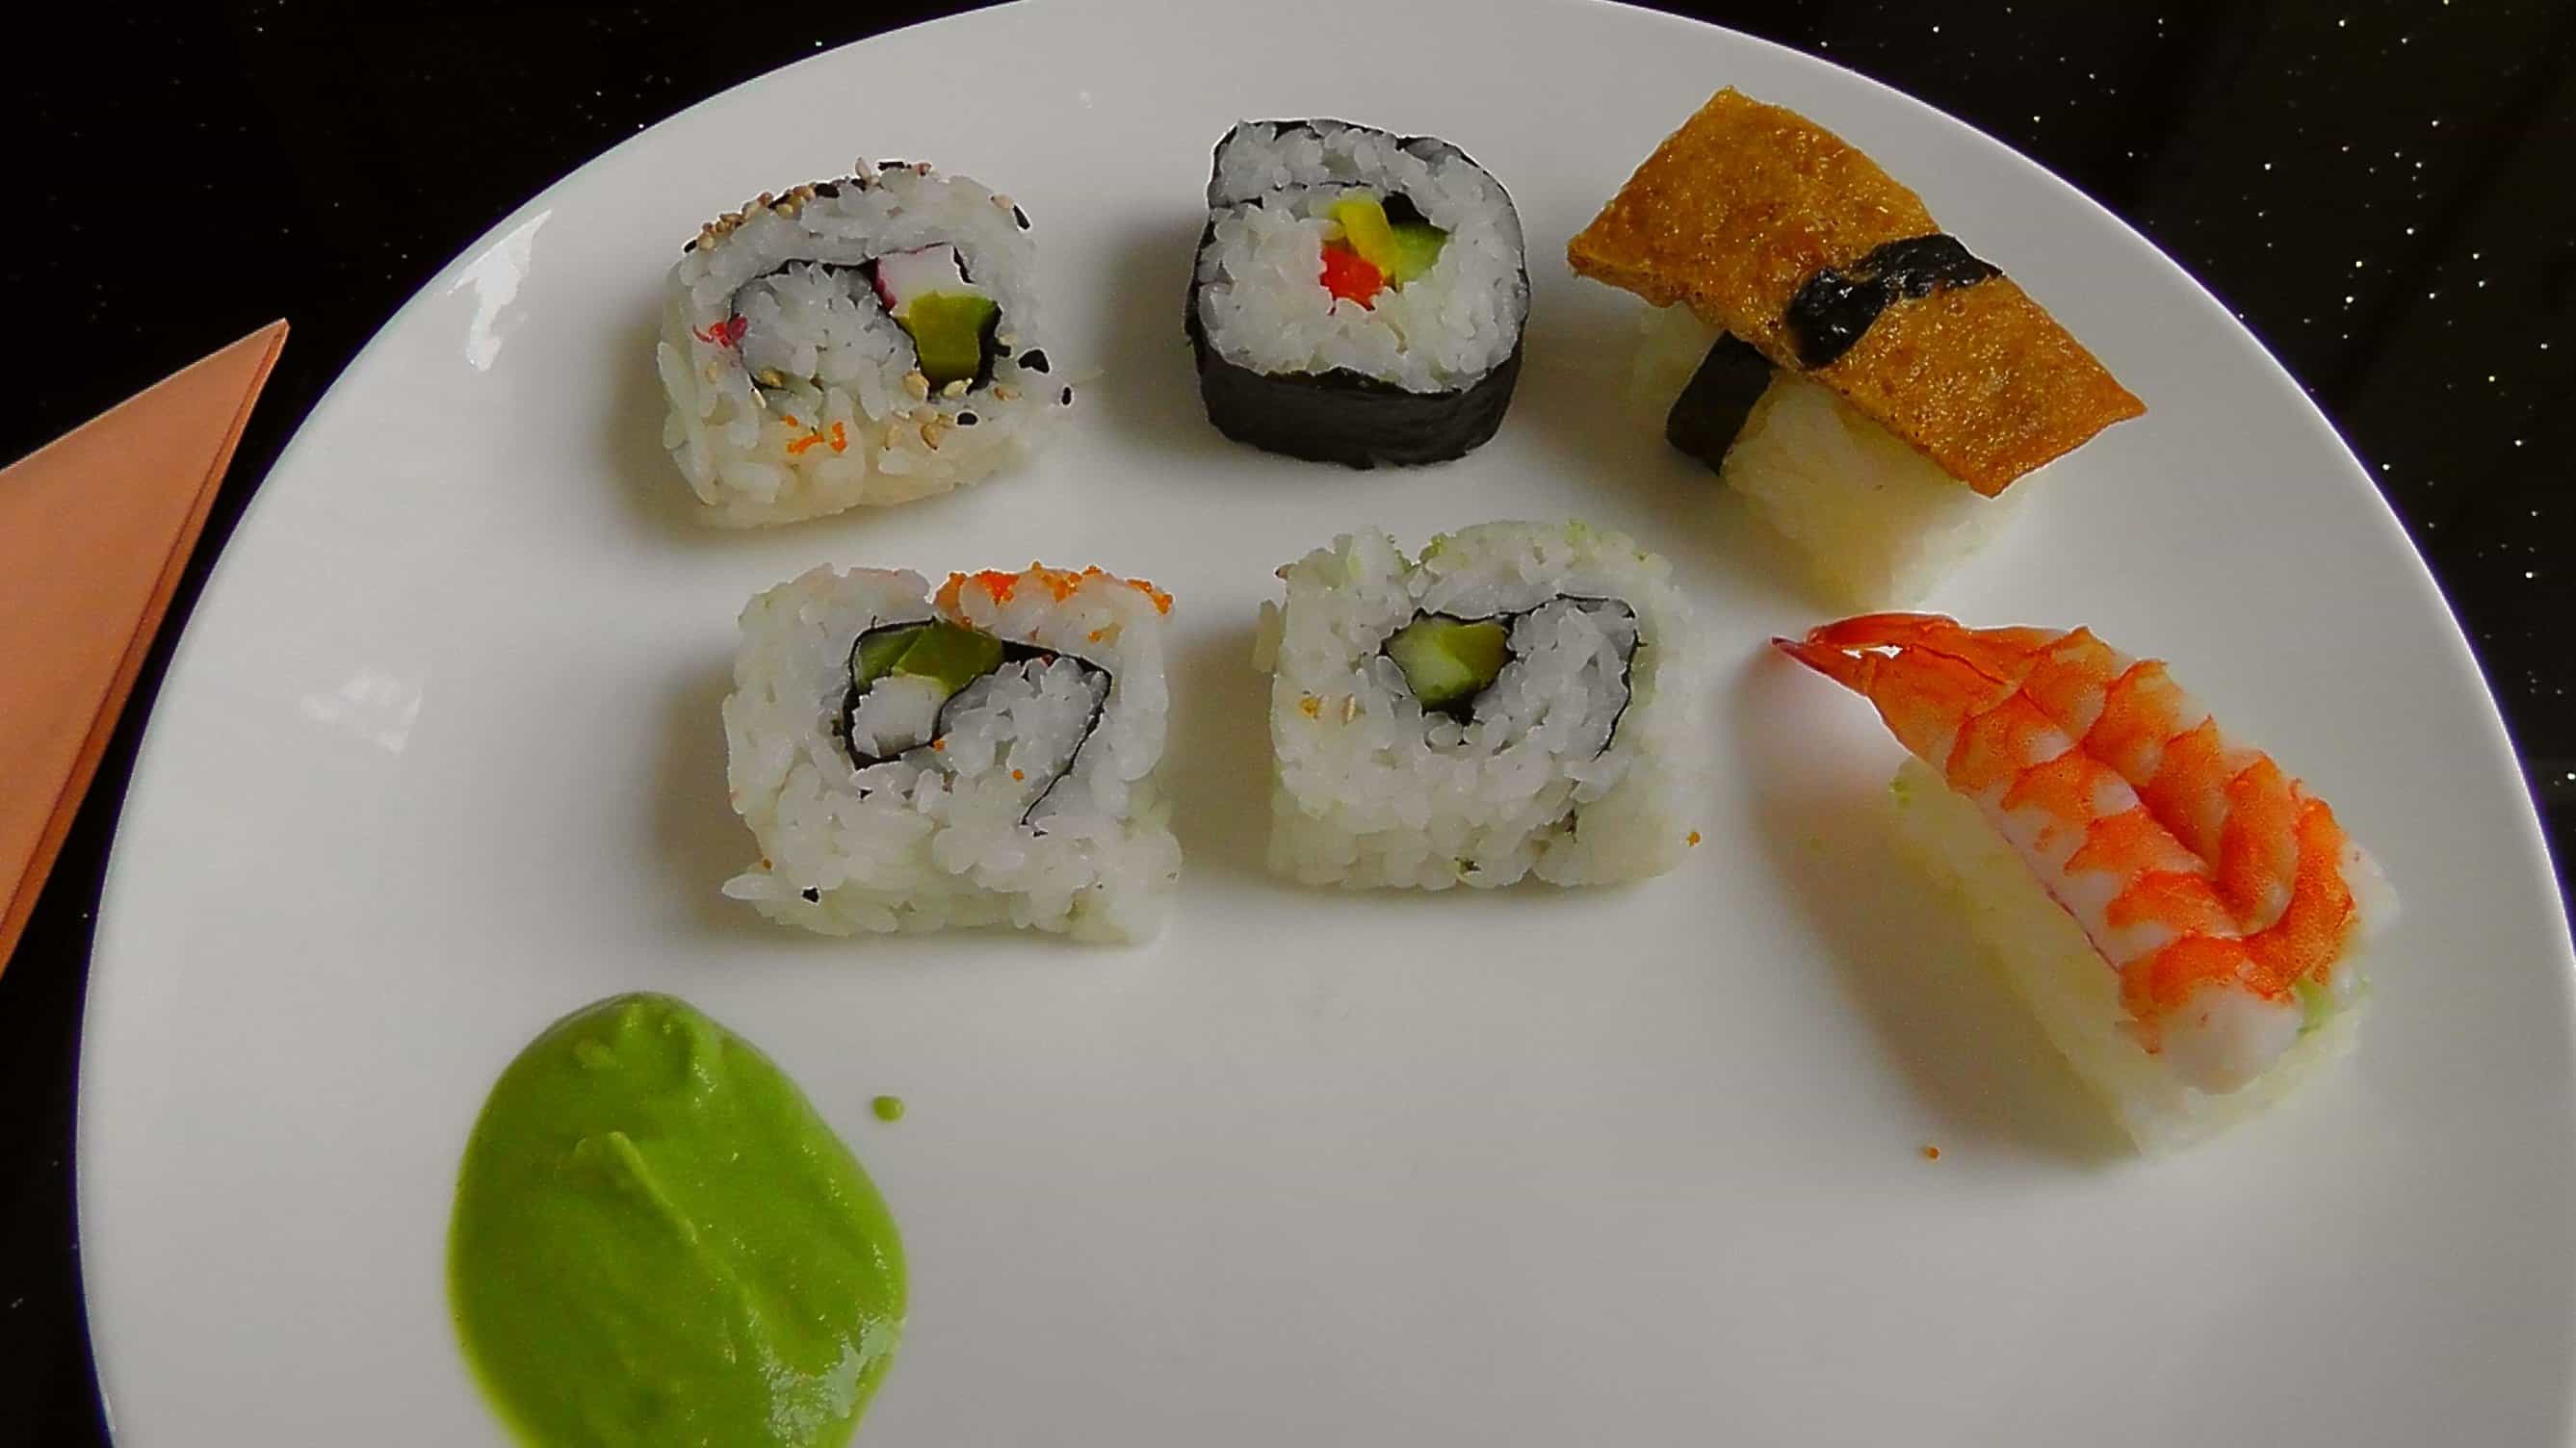 Kostenlose Bild: Meeresfrüchte, Essen, Fisch, Essen, Reis, Sushi ...